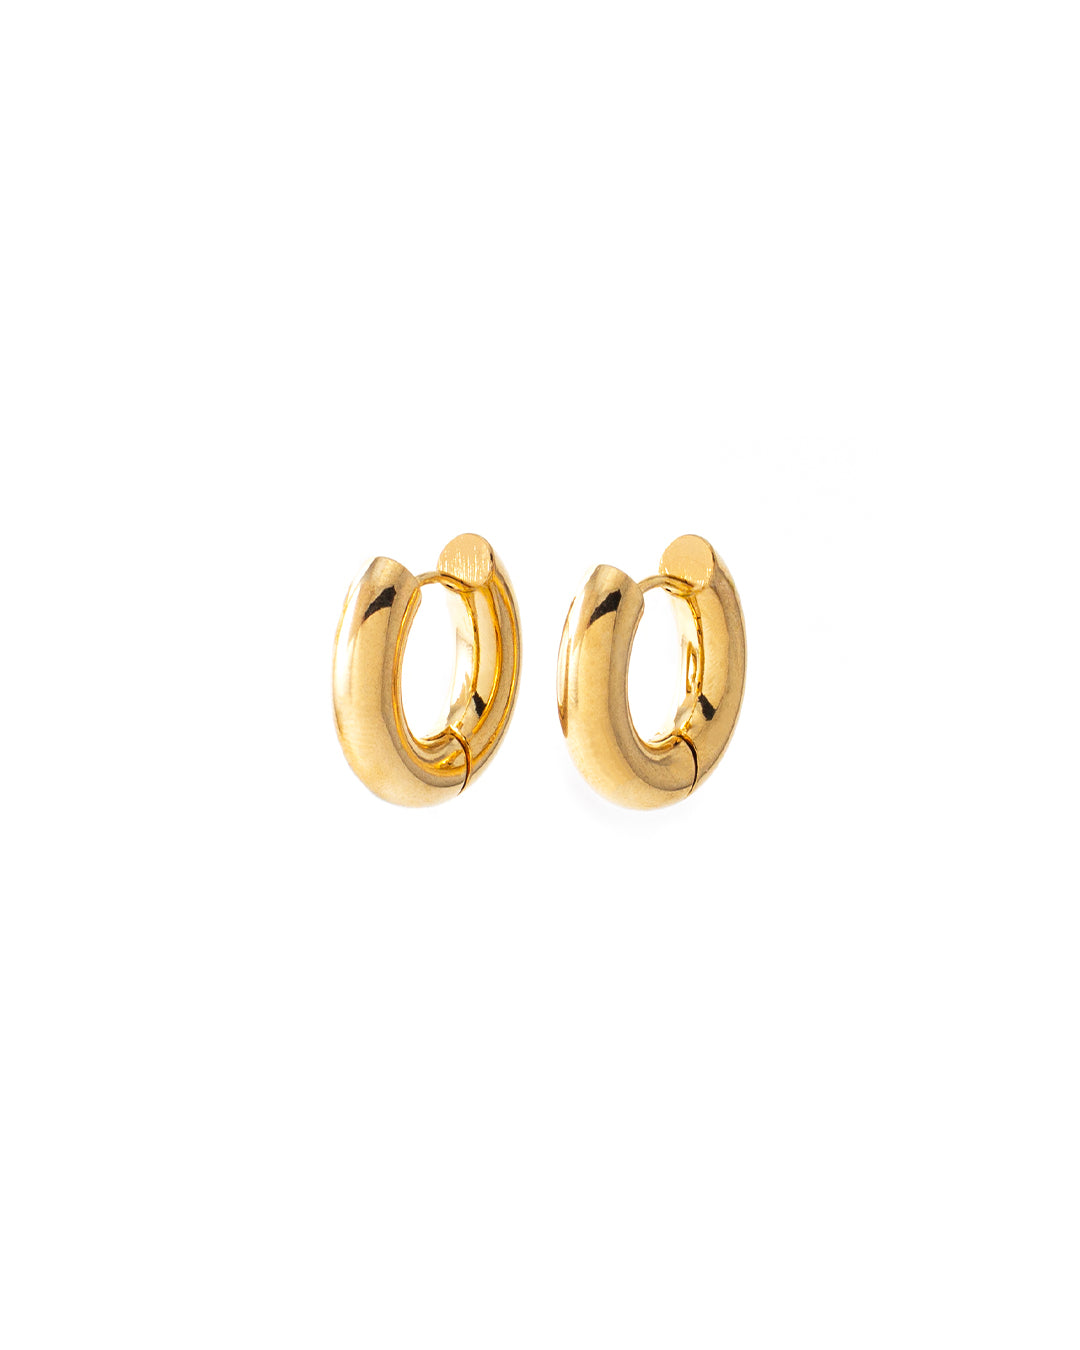 Hugues Gold Hoop Earrings